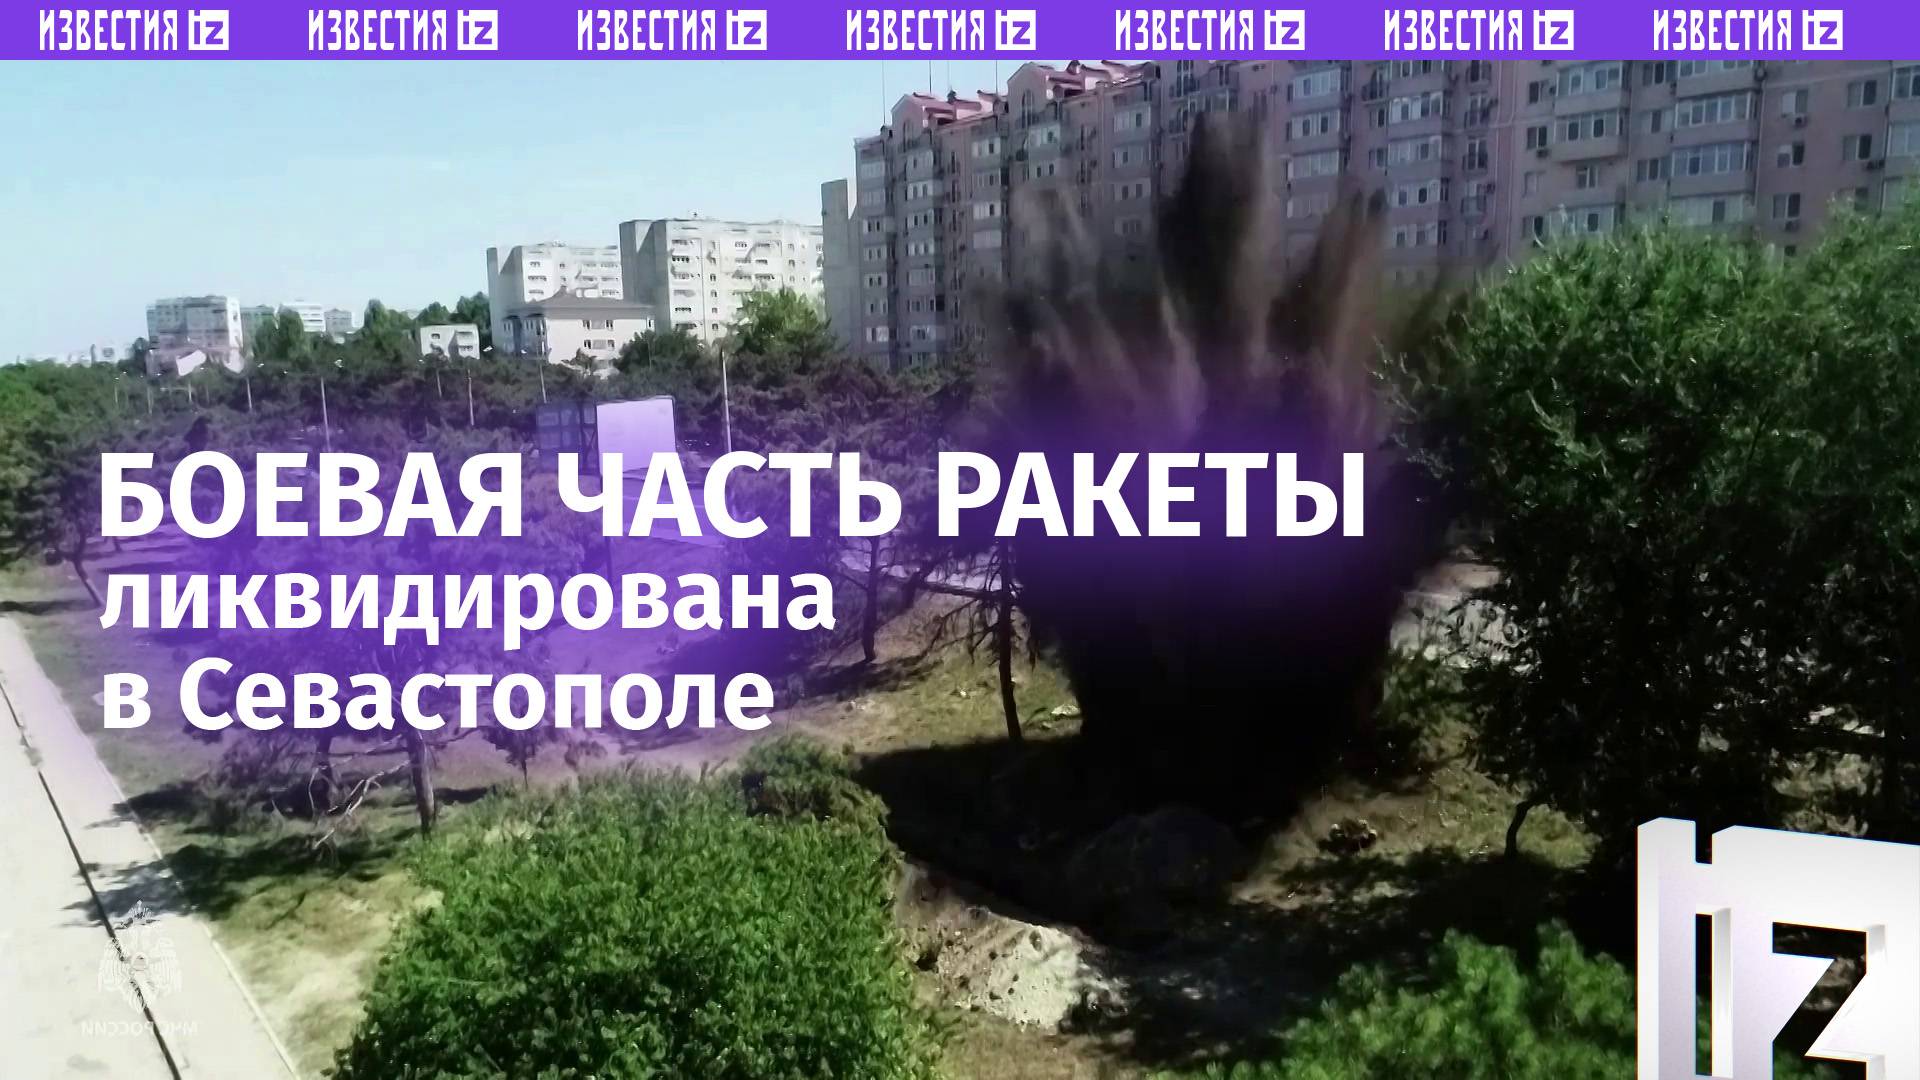 Эпичные кадры работы пиротехников: в Севастополе ликвидировали боевую часть ракеты ВСУ